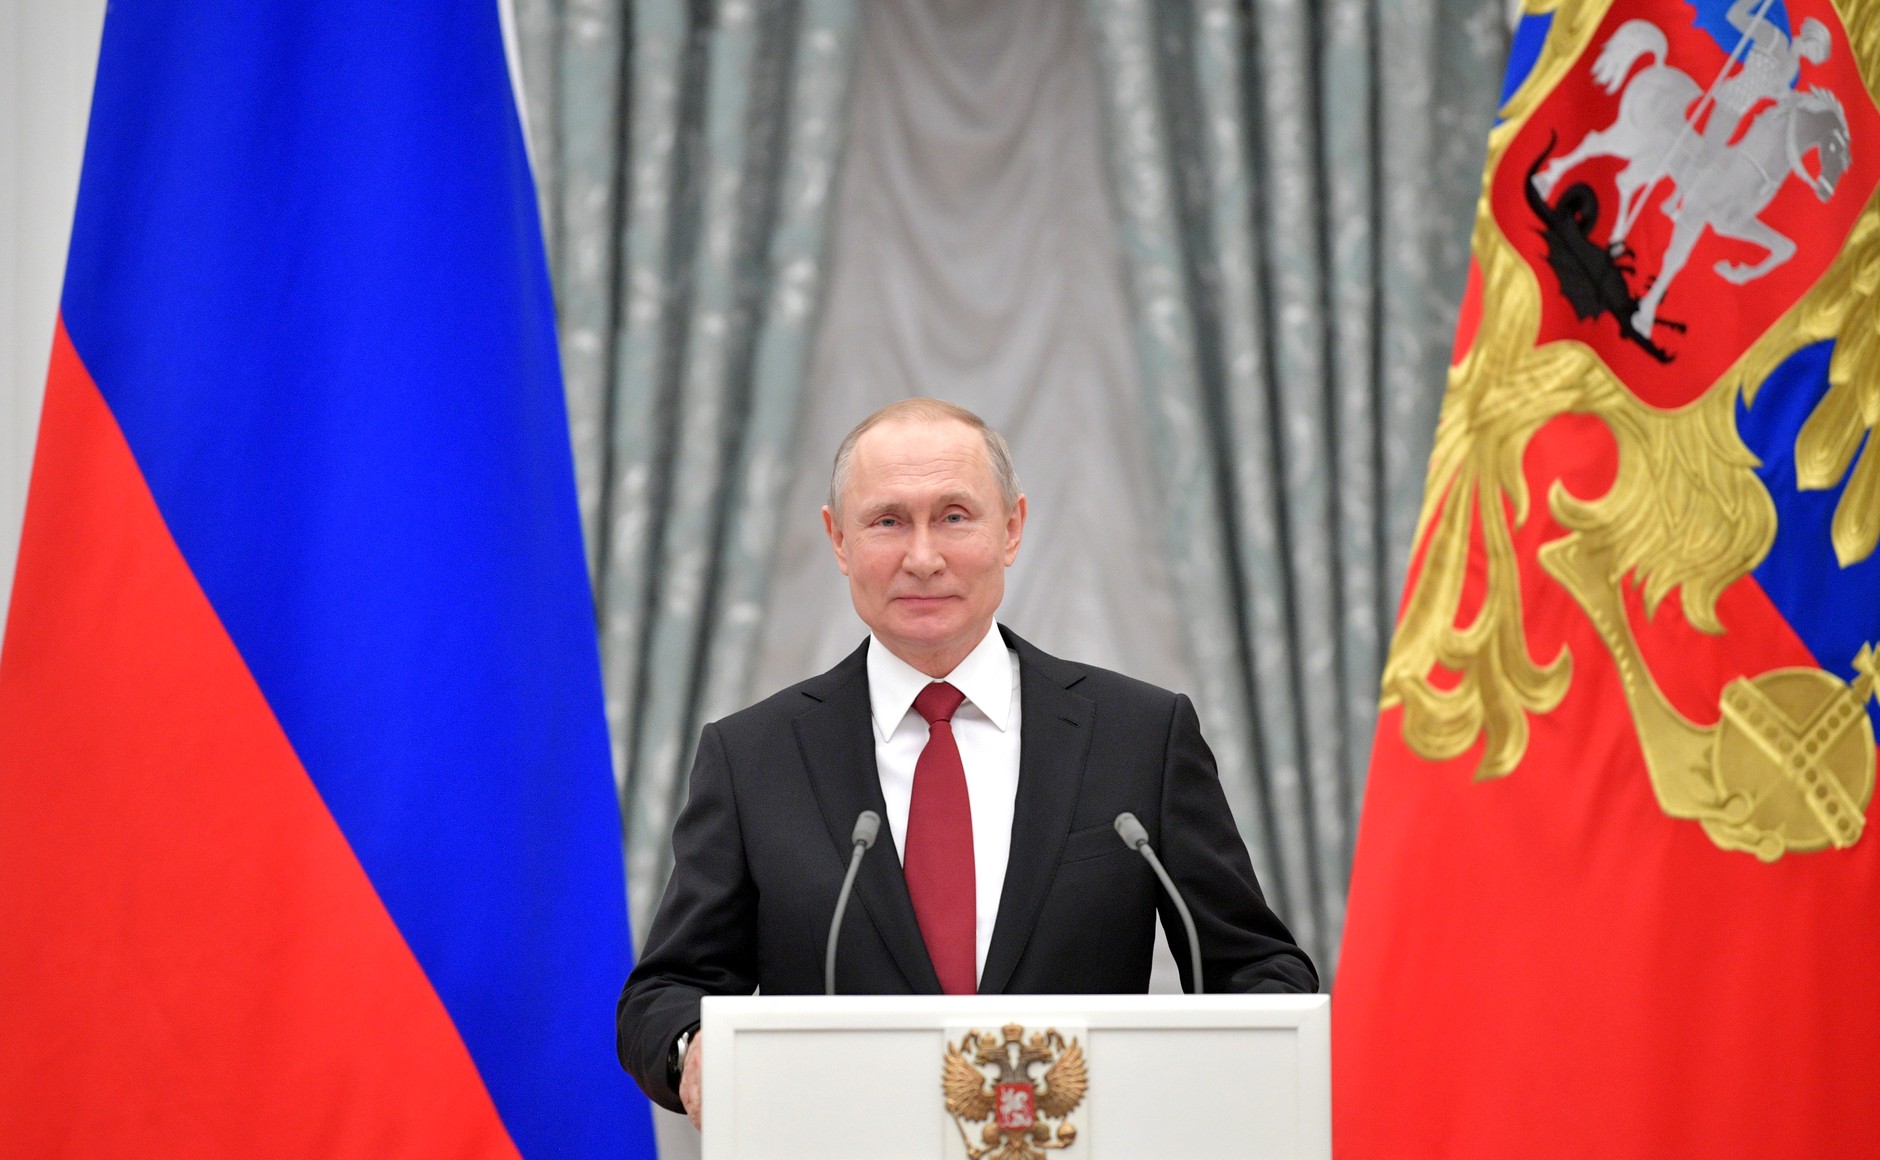 Президент пообещал, что при нем семья останется союзом мужчины и женщины Фото: © Kremlin Pool